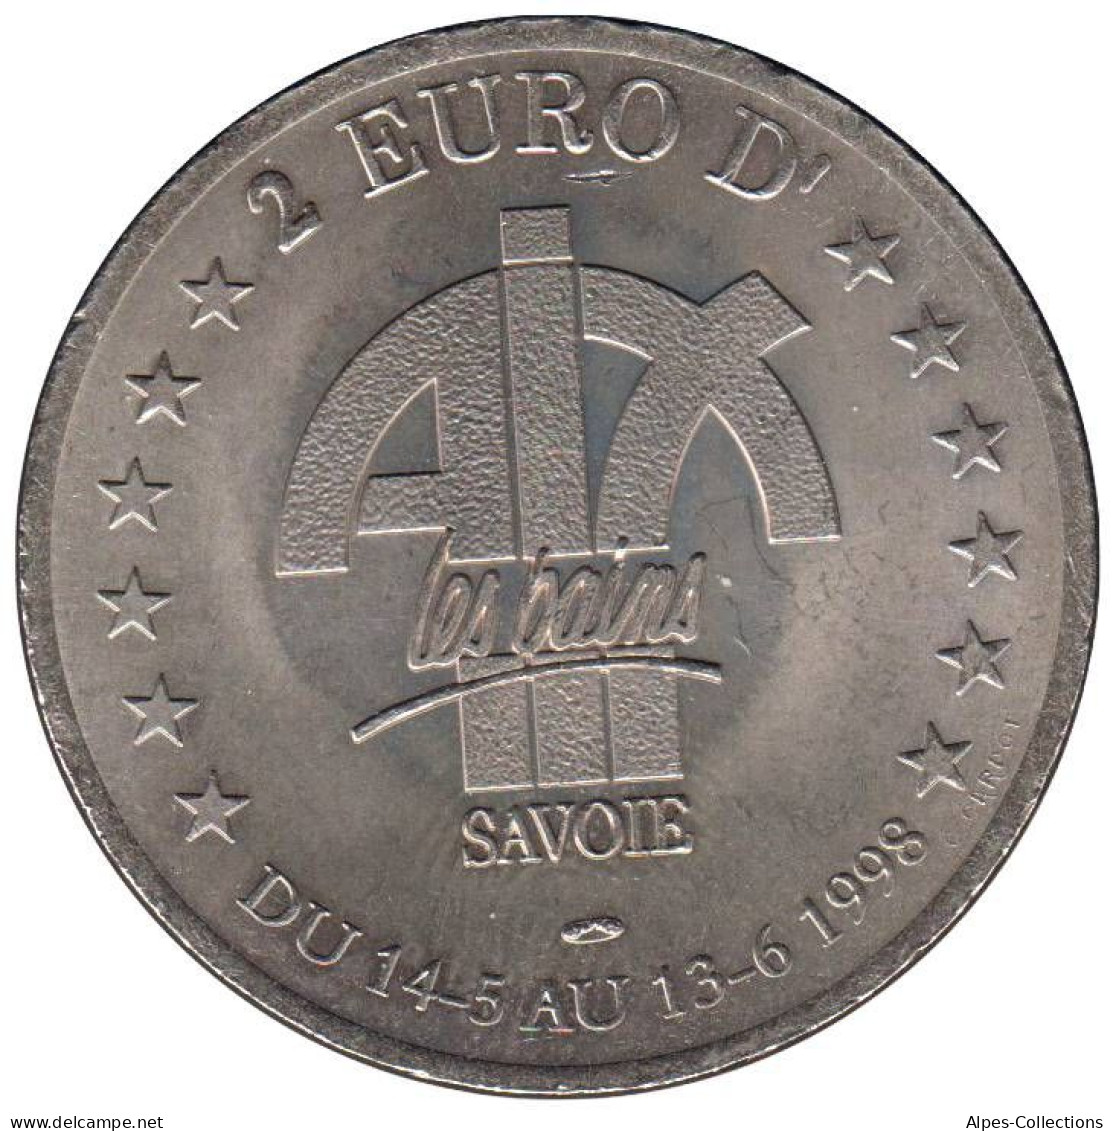 AIX LES BAINS - EU0020.3 - 2 EURO DES VILLES - Réf: T419 - 1998 - Euro Der Städte